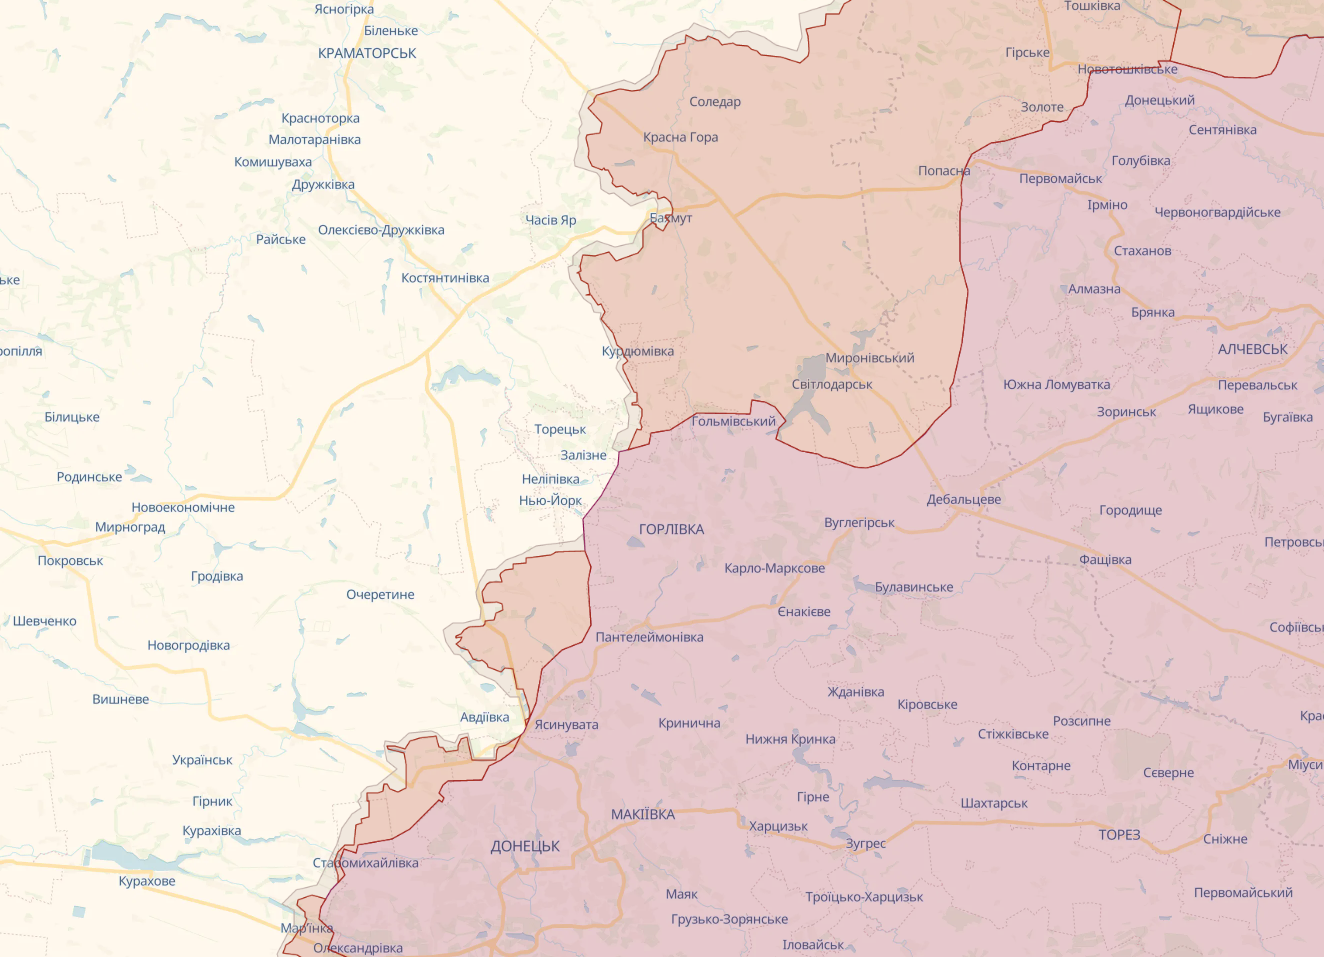 ВСУ заняли стратегически важные позиции на Донецком направлении, на Запорожье оккупанты готовятся к обороне, – Дмитрашковский